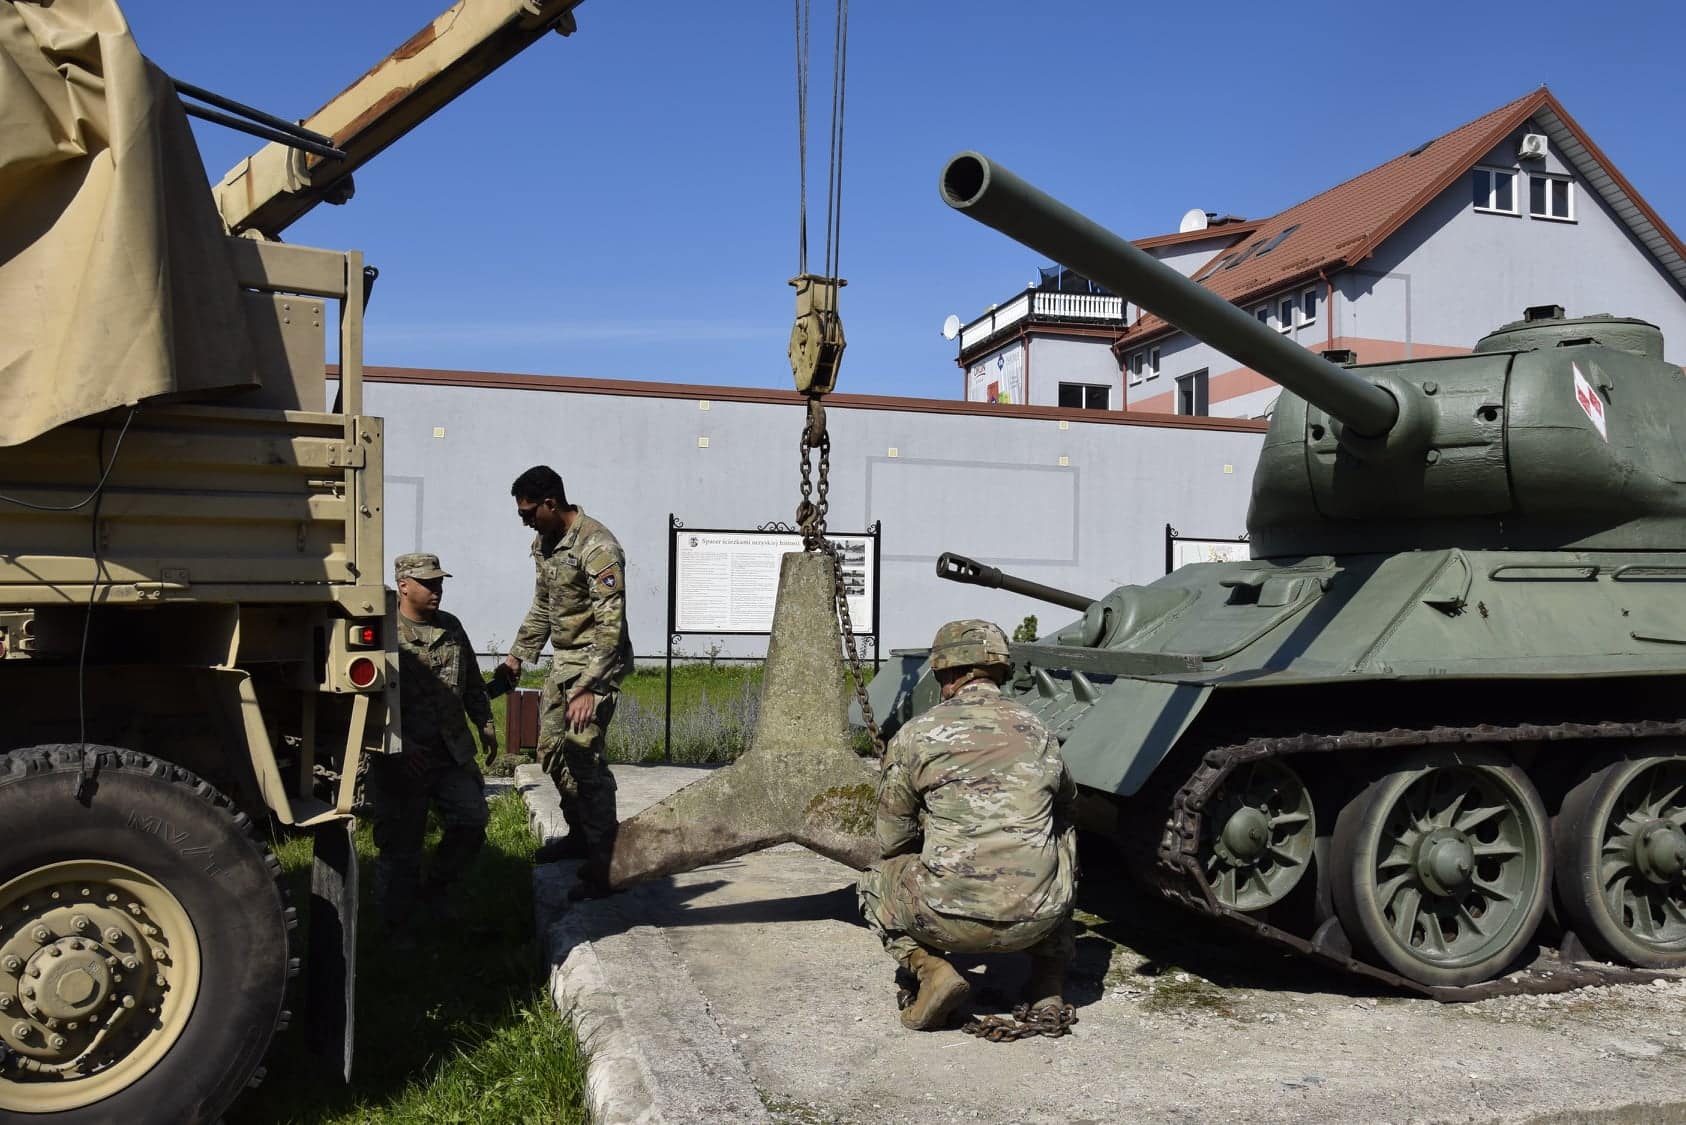 Amerykańskie wojsko pomogło wydobyć 300-kilowy sprzęt Orzysz Olsztyn, Wiadomości, zShowcase